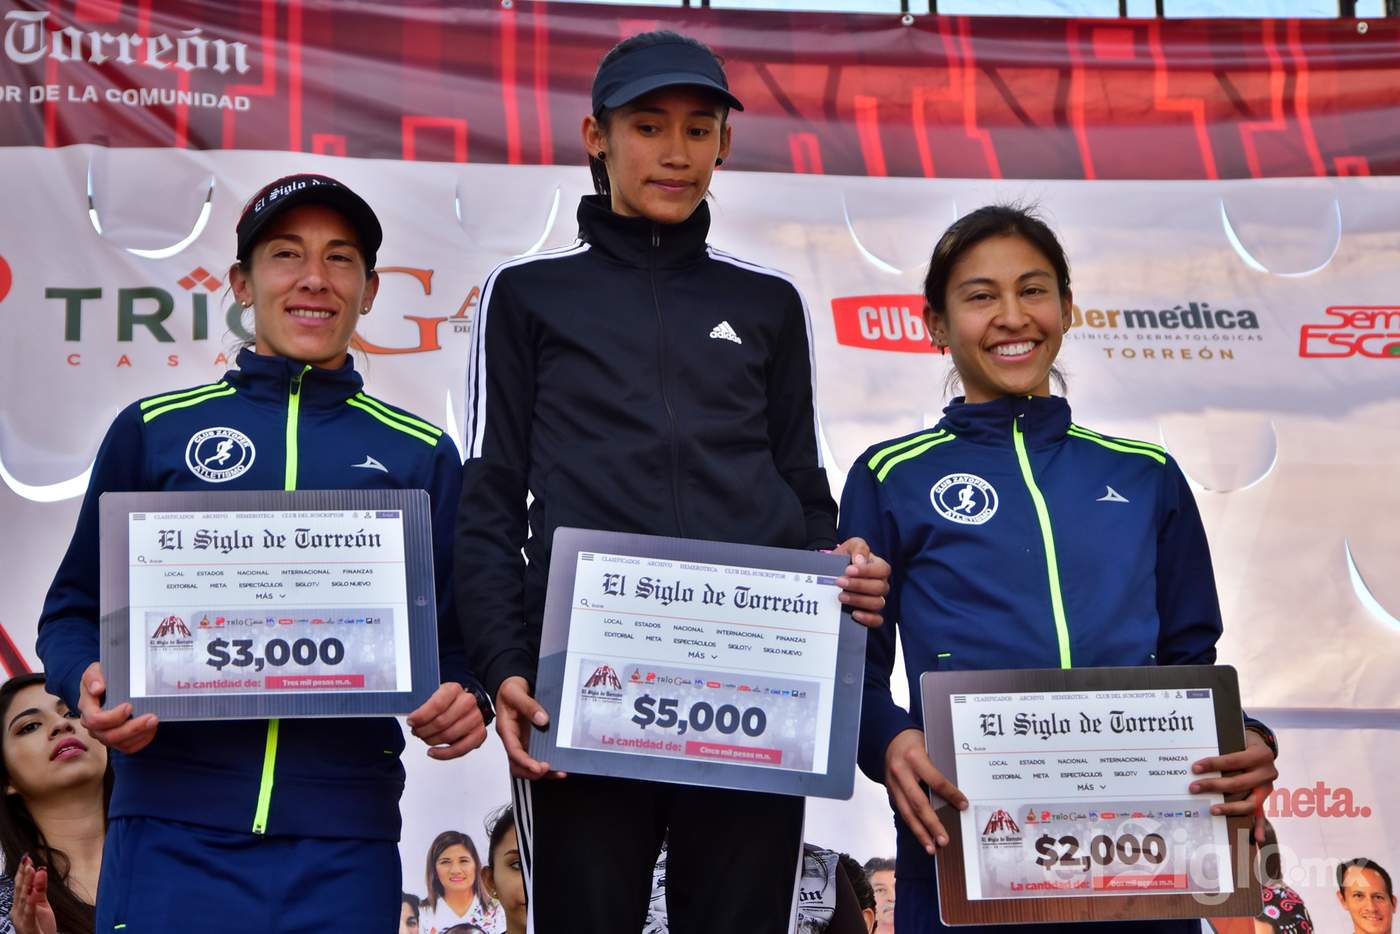 Las damas subieron al podio a reclamar su premio en ambas distancias, el Medio Maratón 21K y la 5K. (Ernesto Ramírez)